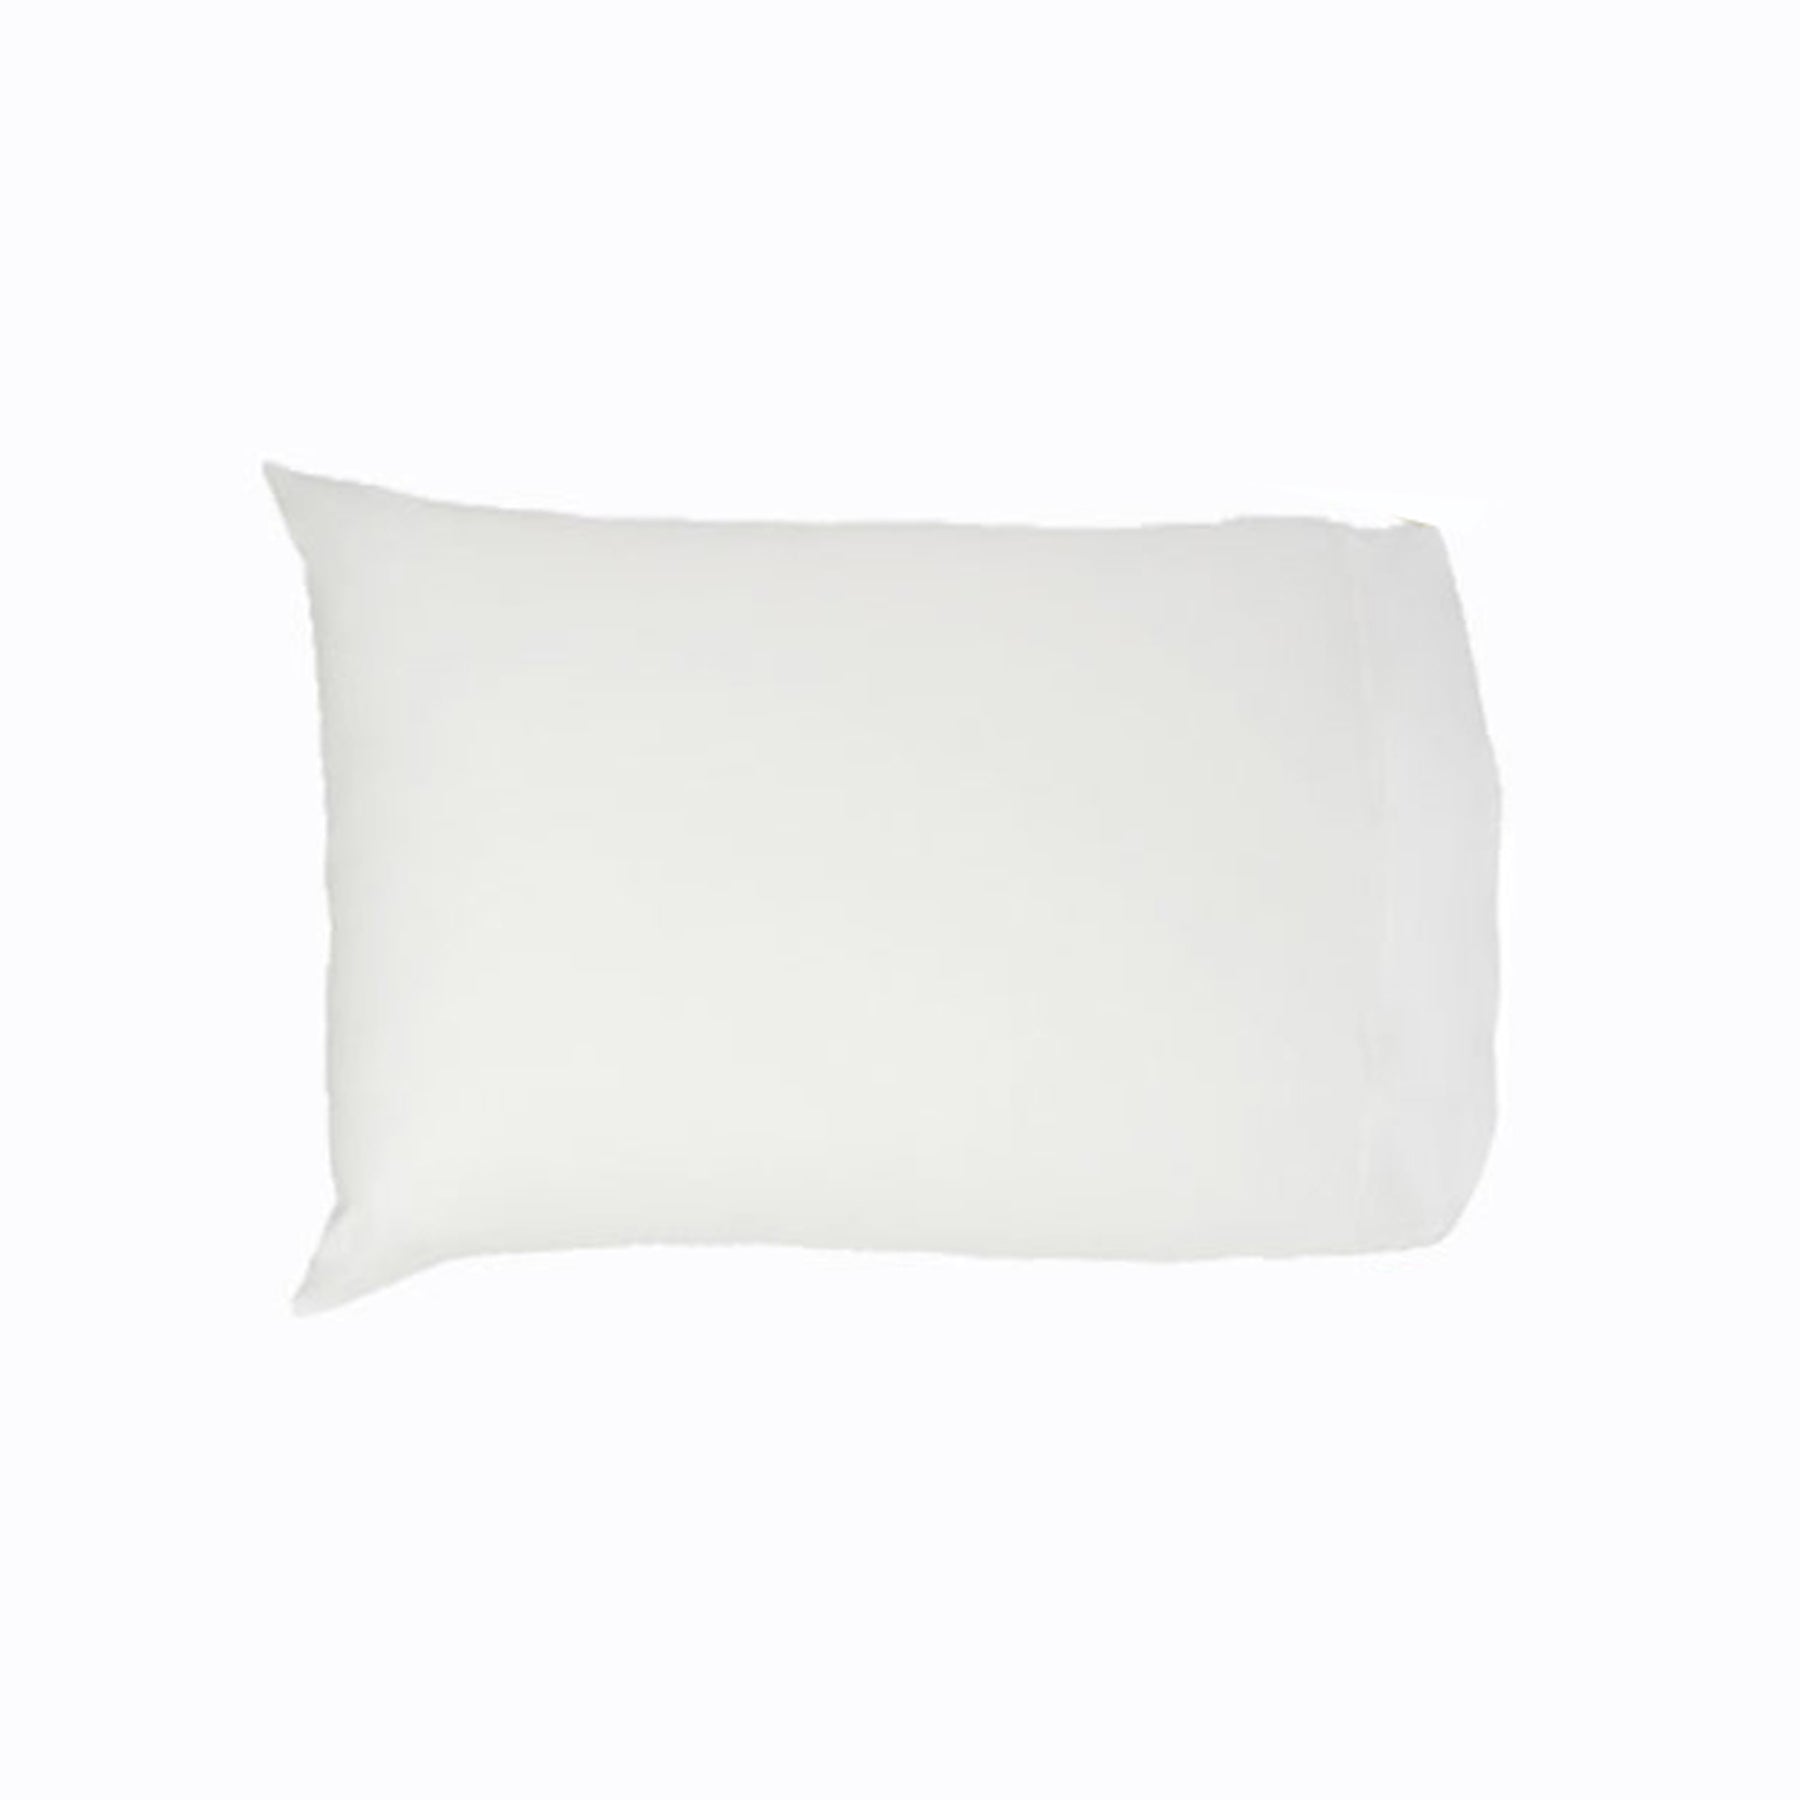 Easyrest 250Tc Cotton Standard Pillowcase White